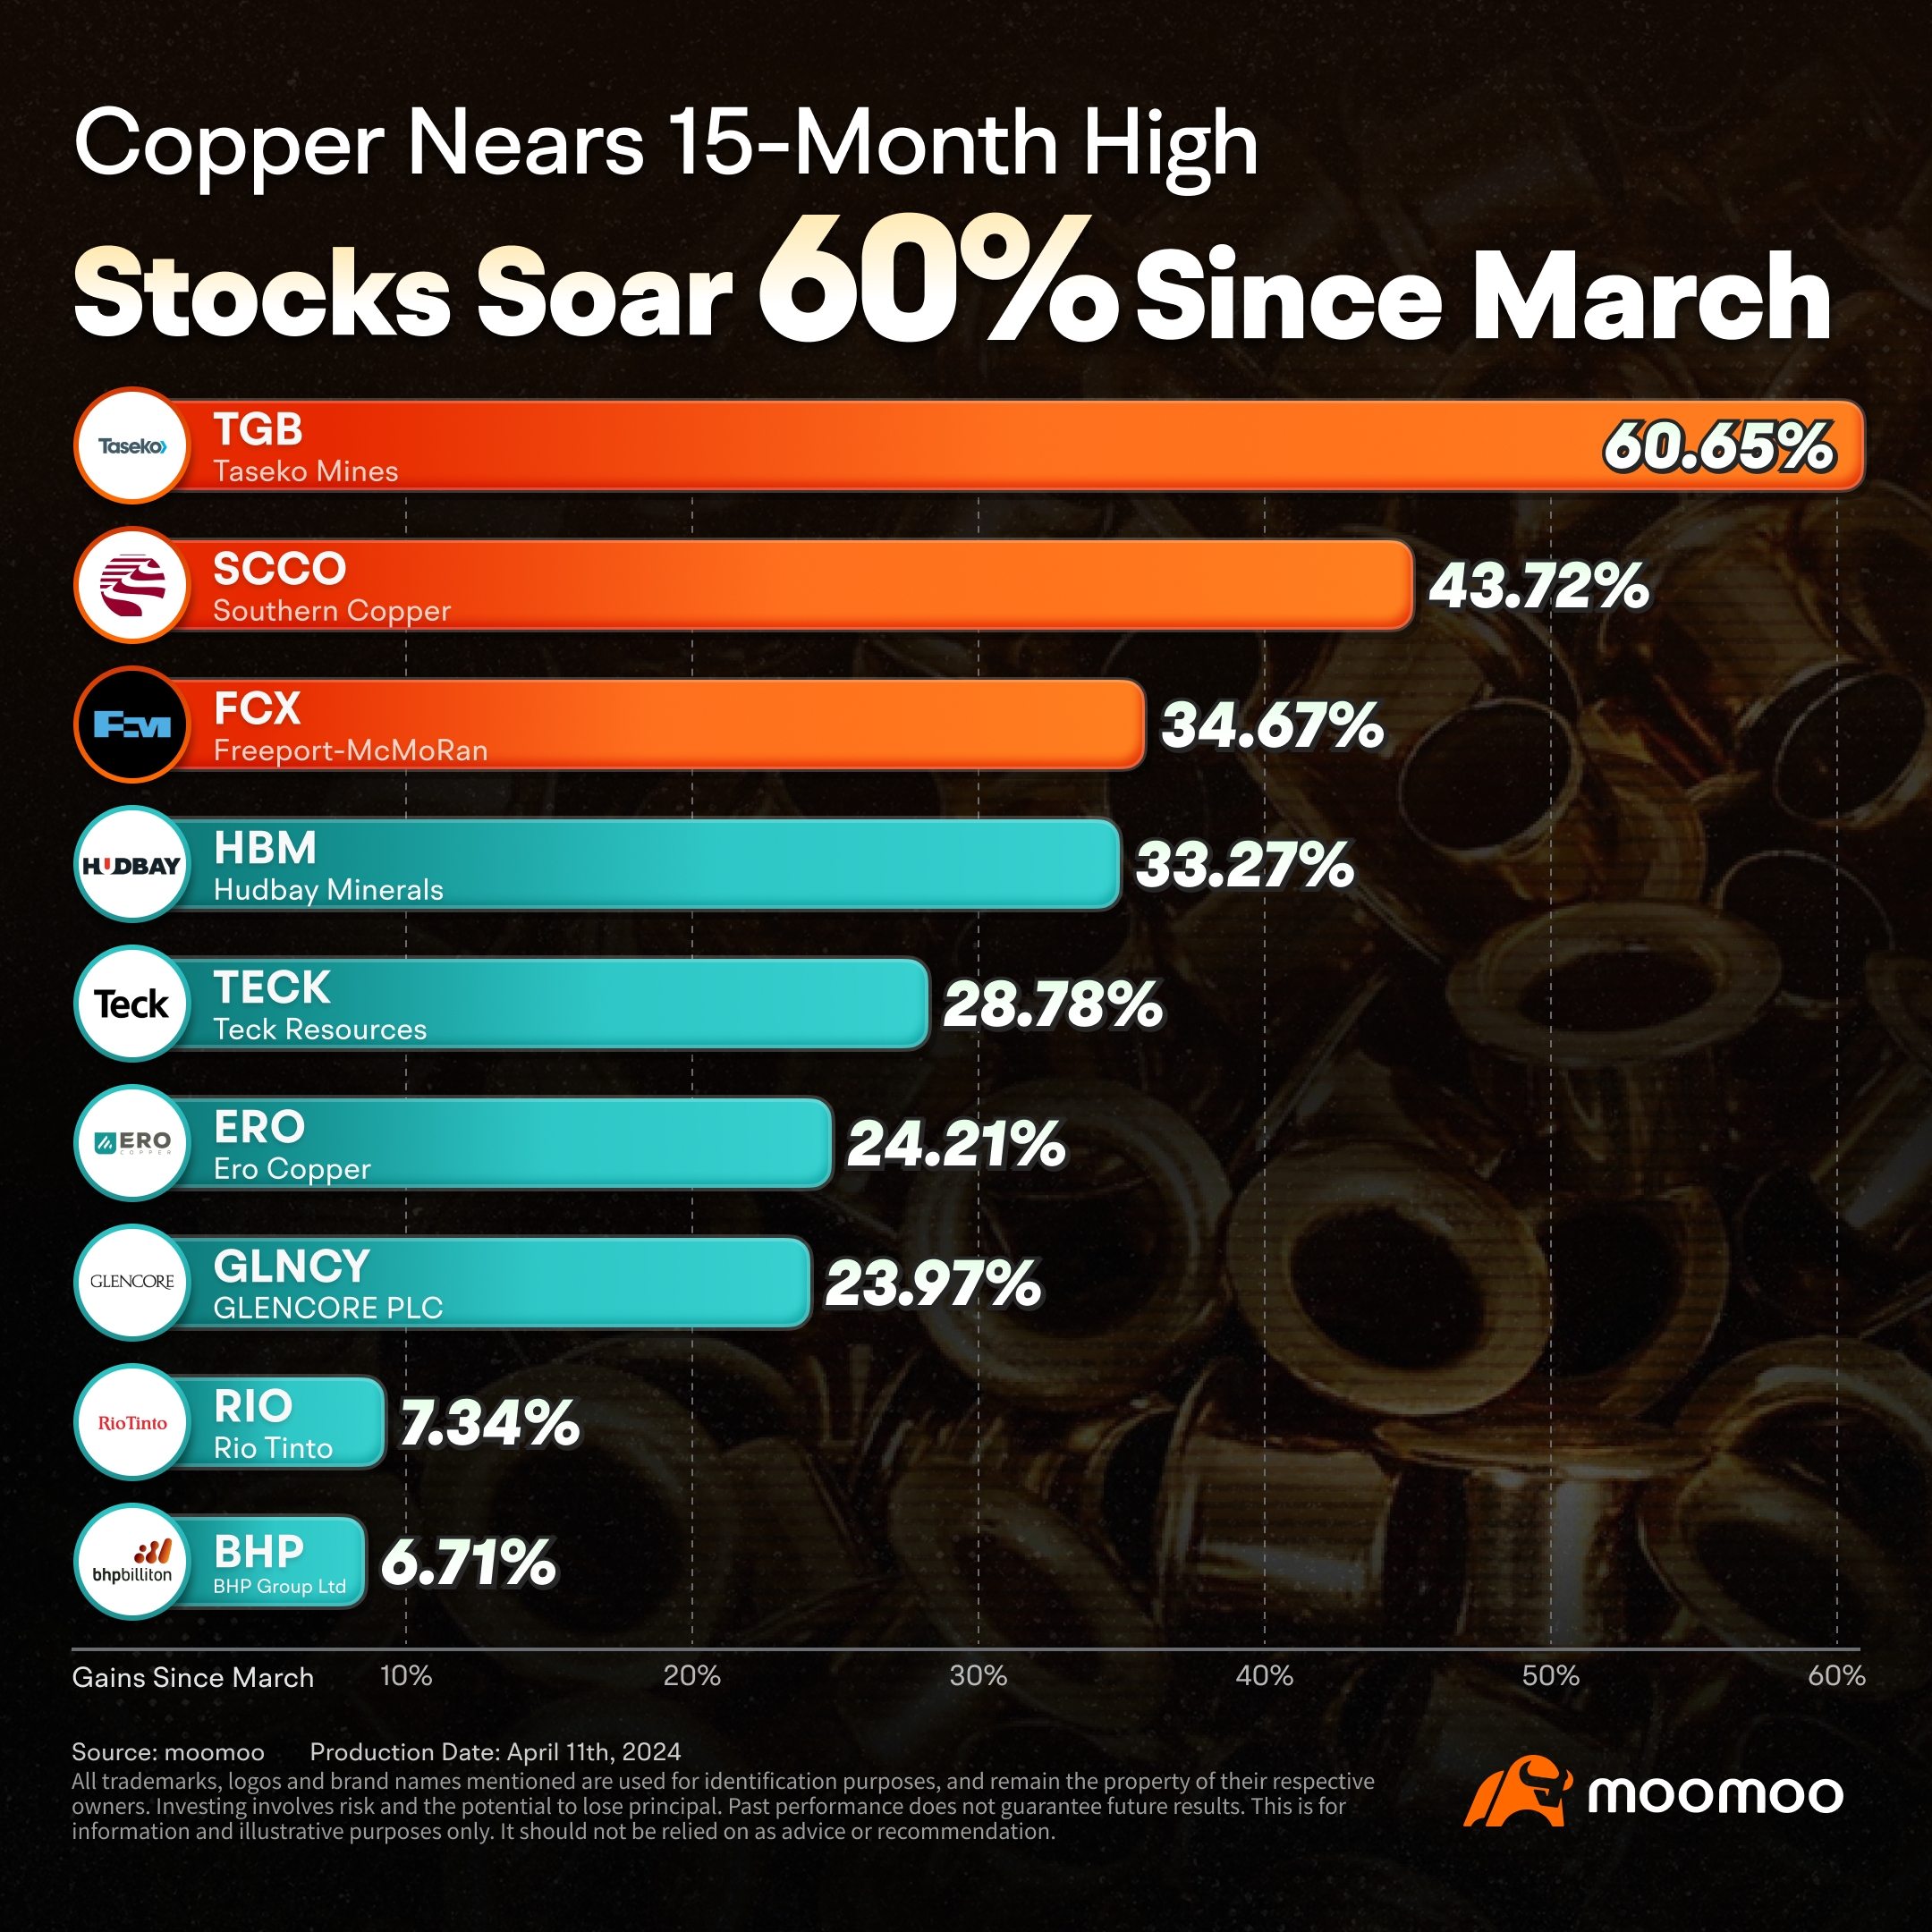 銅接近 15 個月高點：看看為什麼這些銅股價暴漲